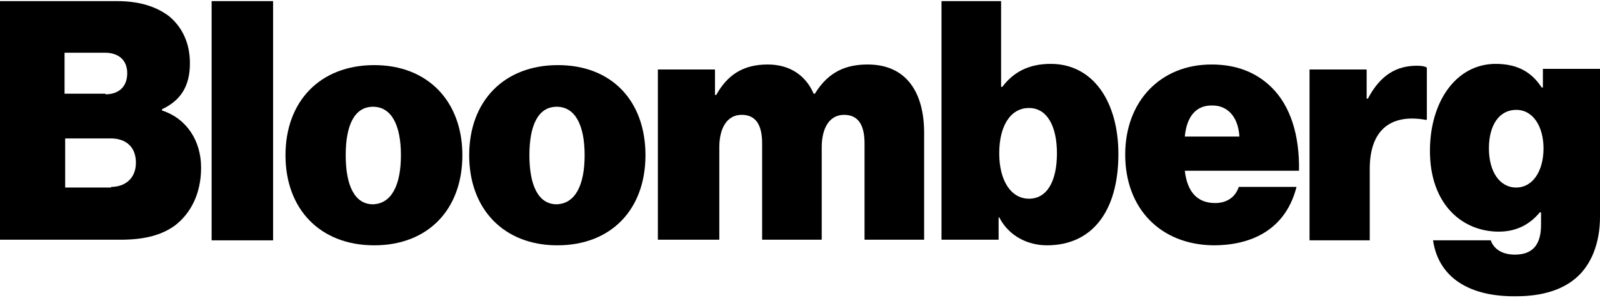 A simple, square black icon.